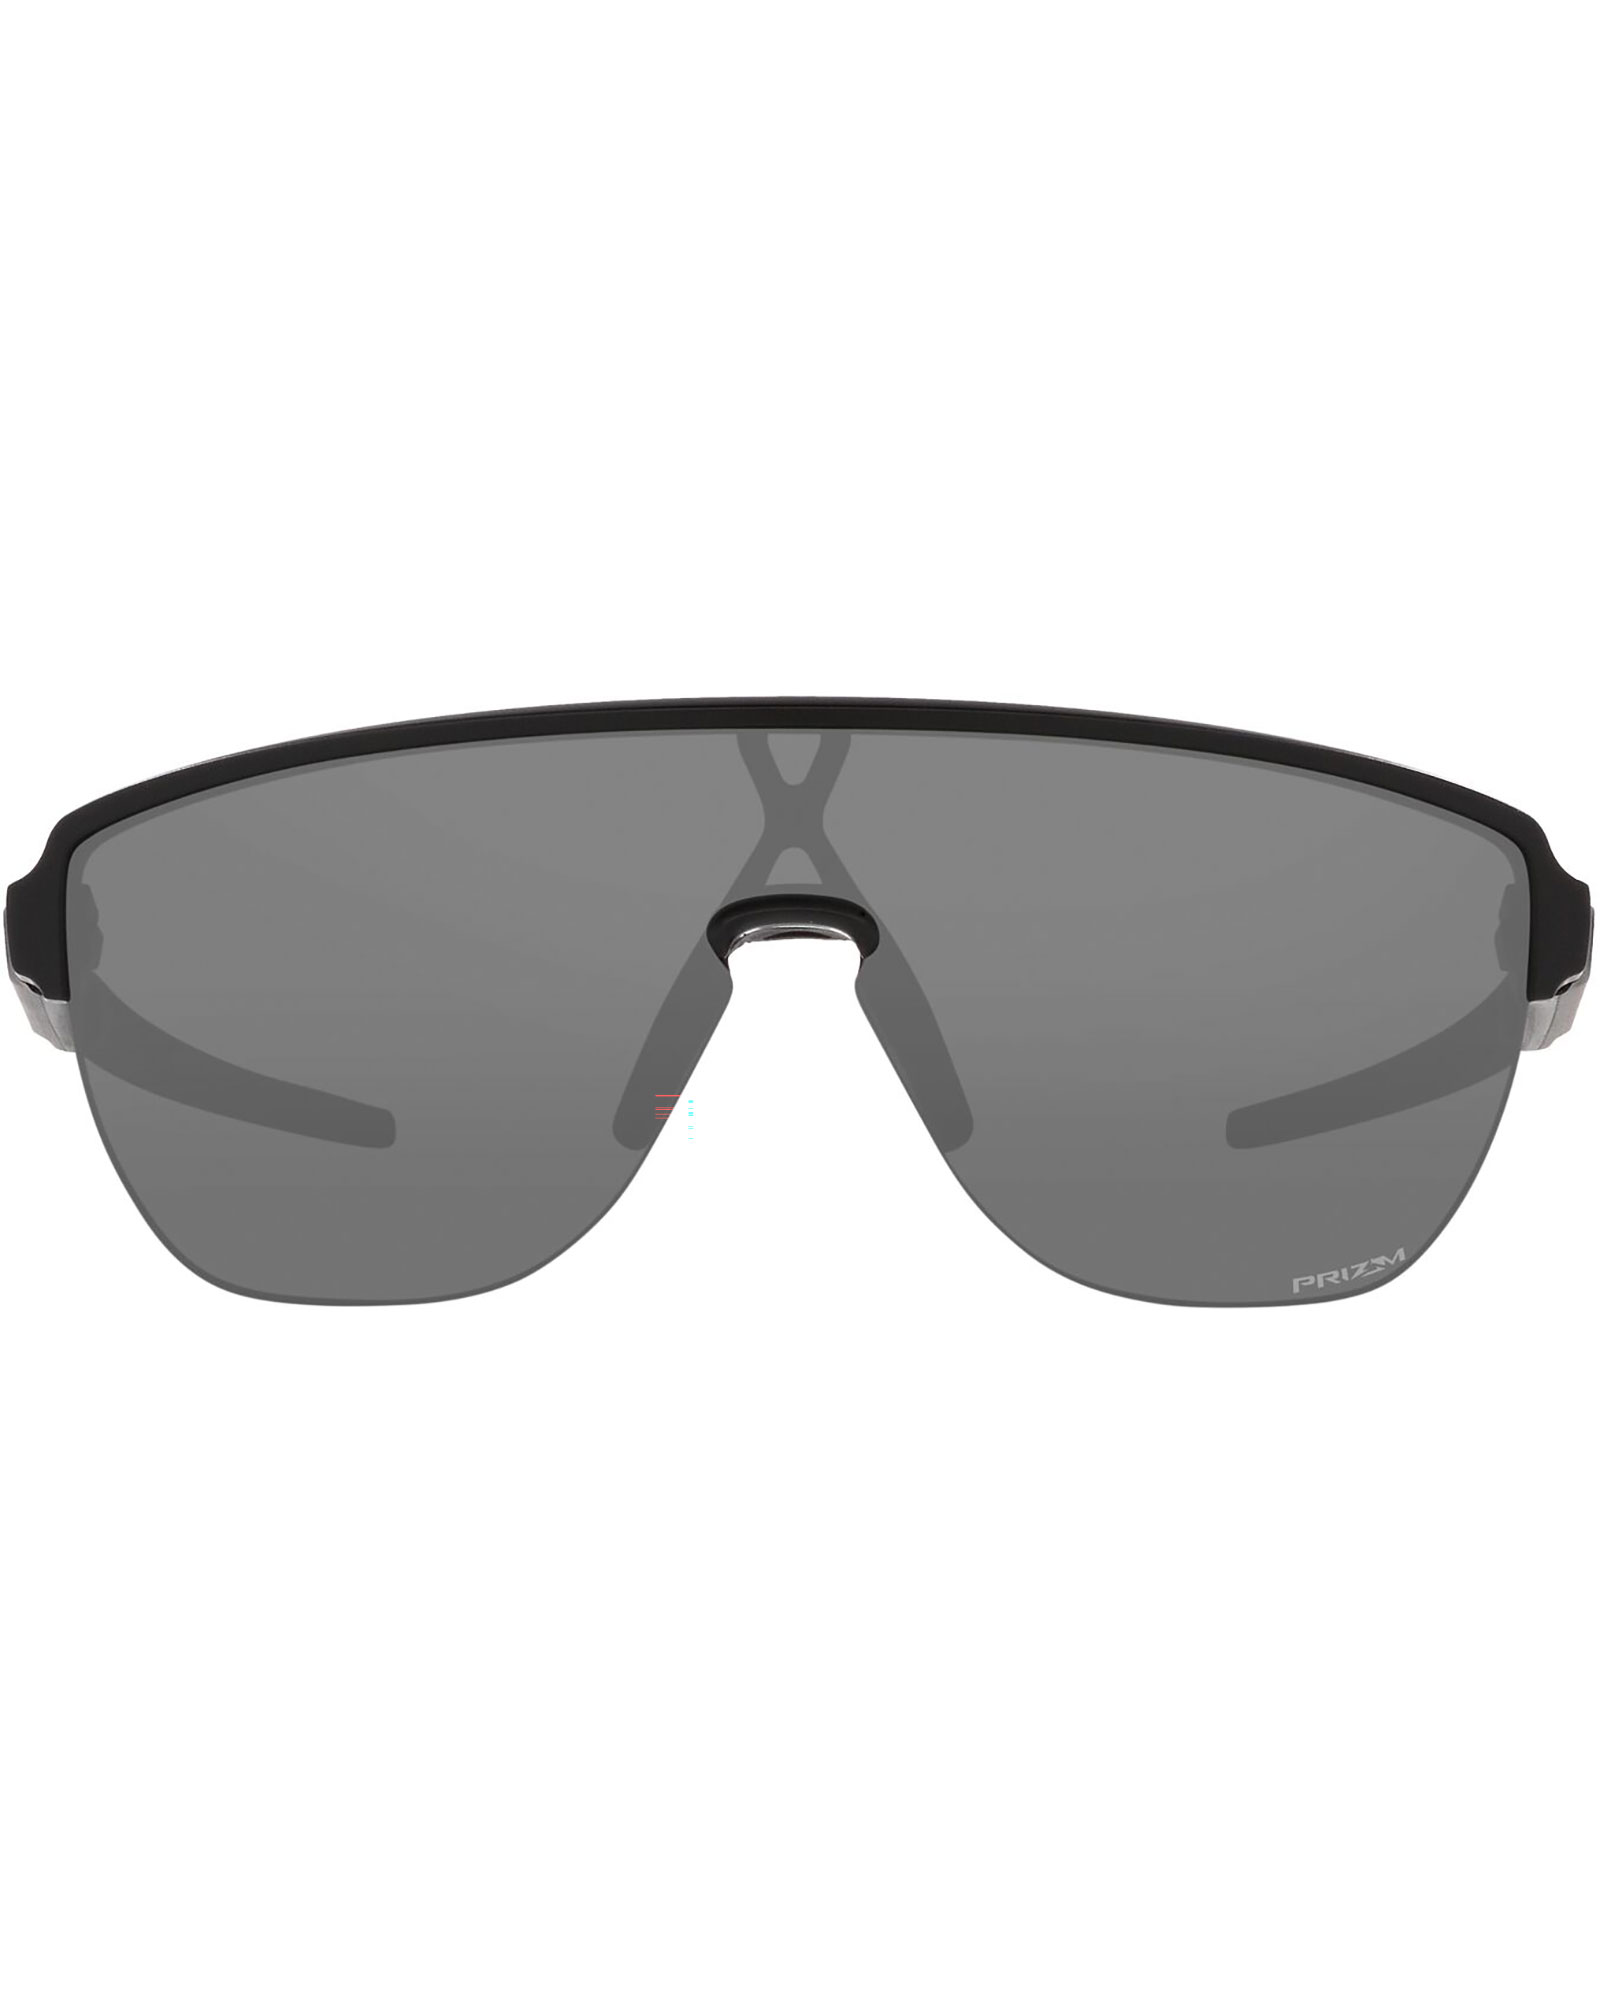 Oakley Corridor Prizm Black Sunglasses - Matte Black